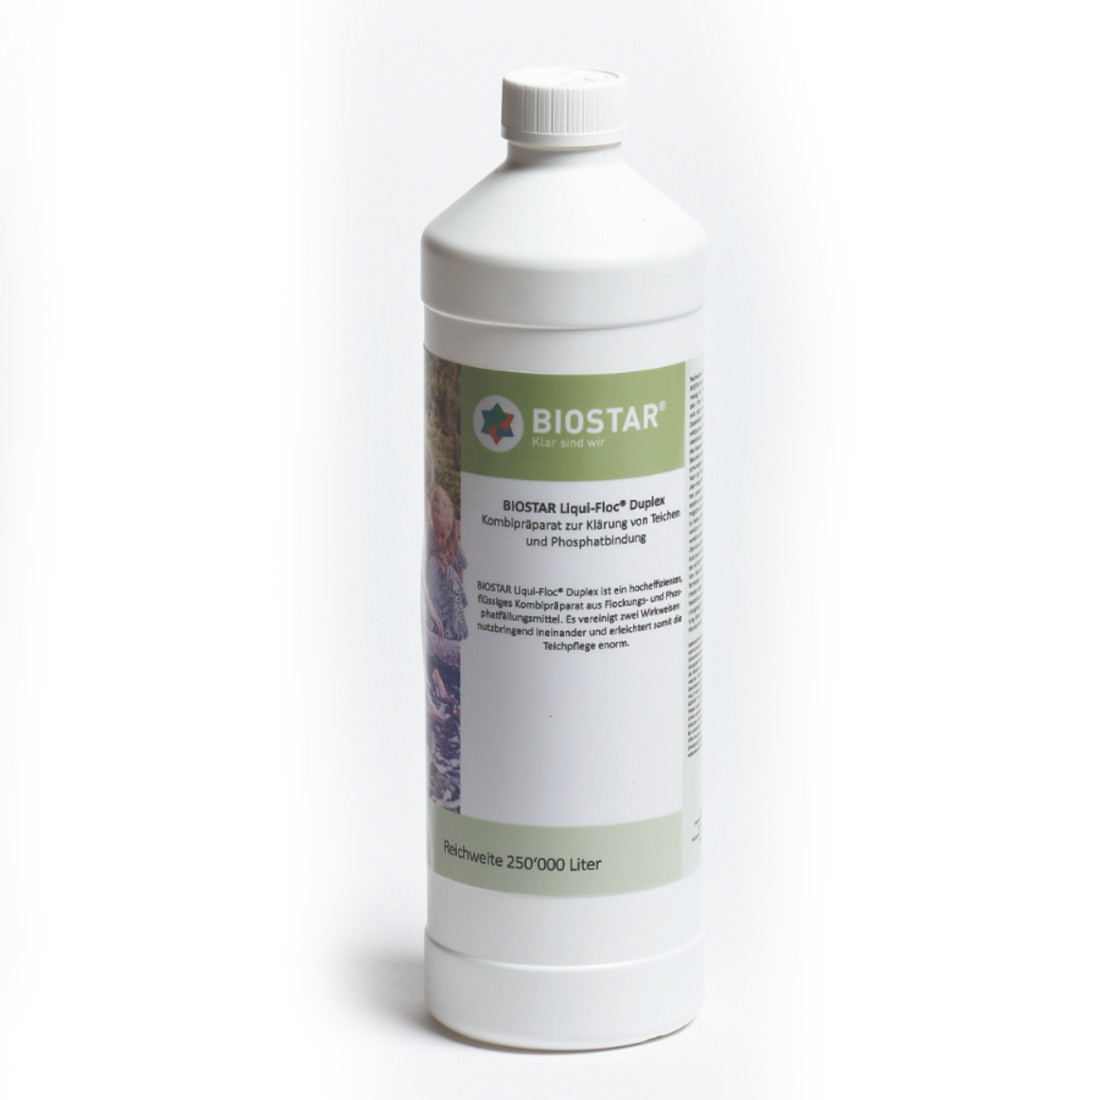 Biostar Liqui-Floc®Duplex 1 Liter -Wasserklärung & Phosphatbindung-